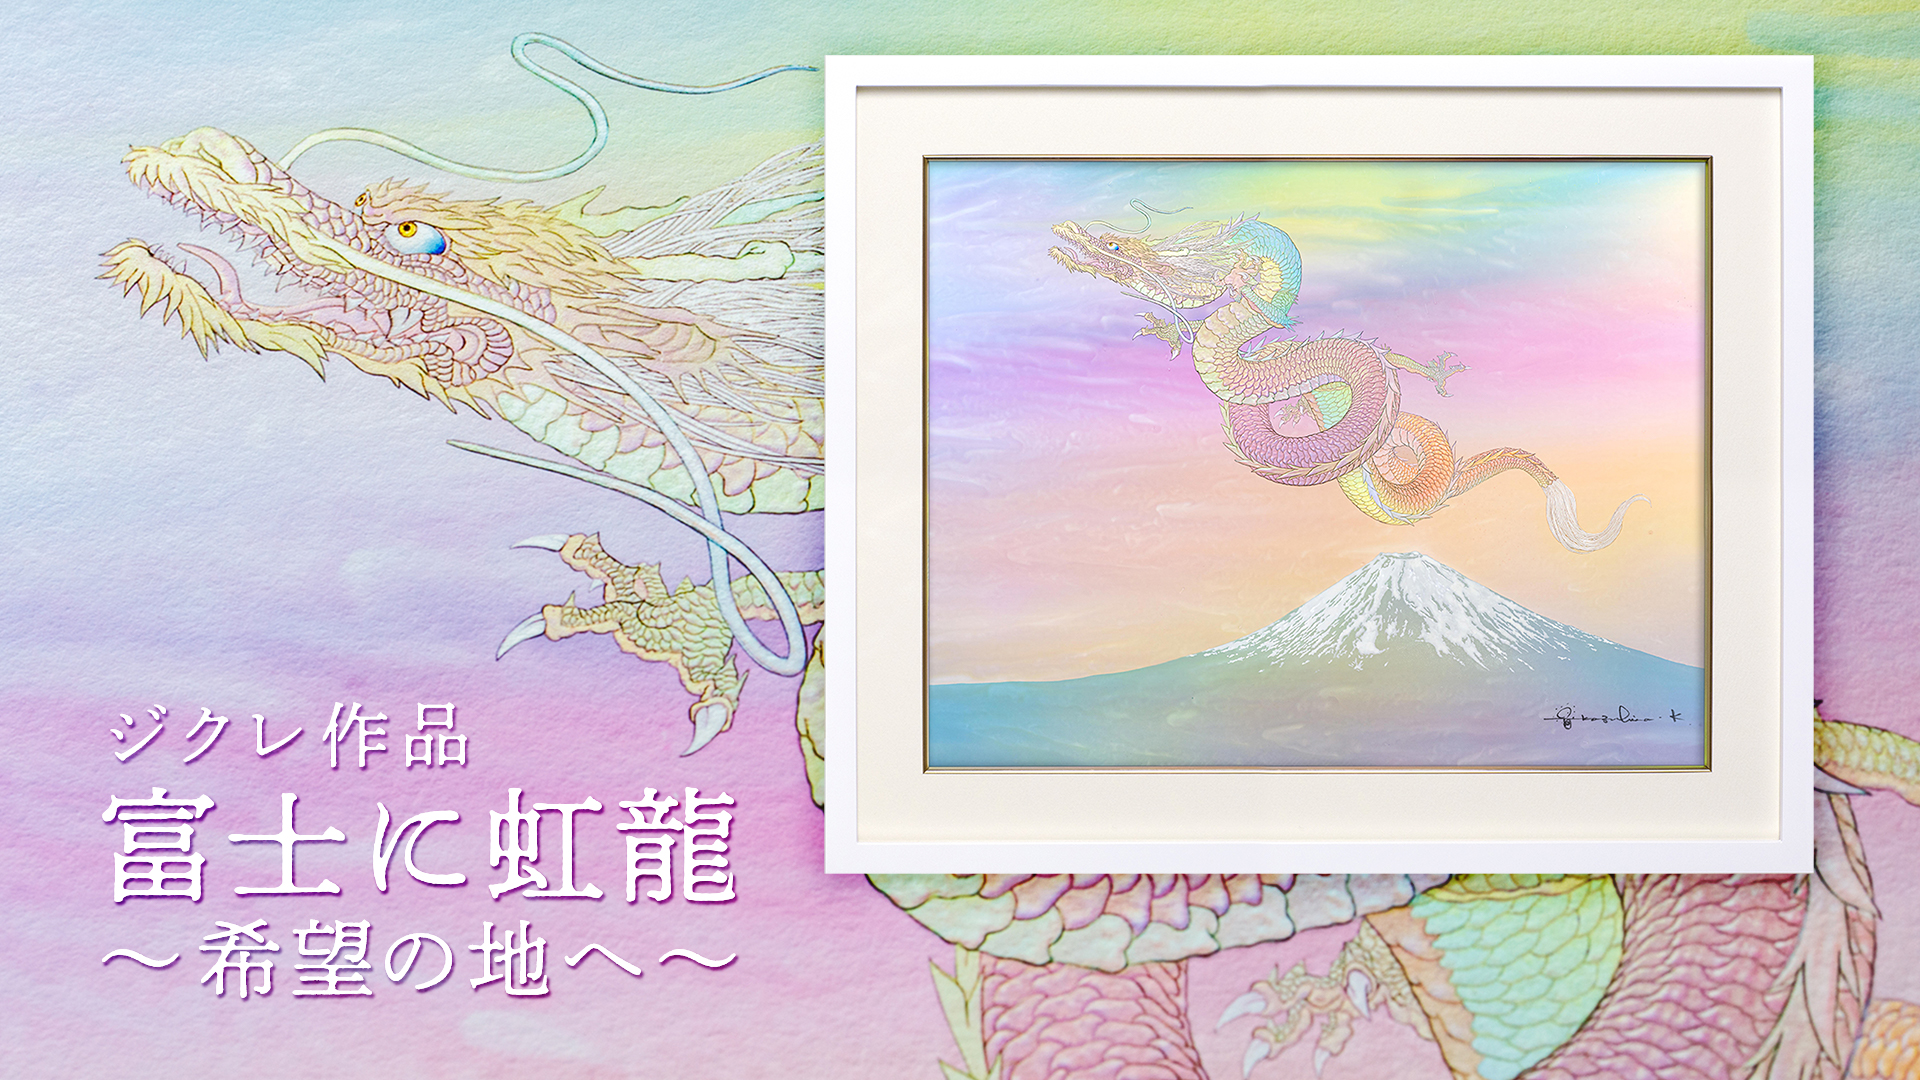 复制画艺术微喷《富士山上的虹龙 - 前往希望之地 -》复制画有3种。<br>
请通过视频浏览各自的特征。